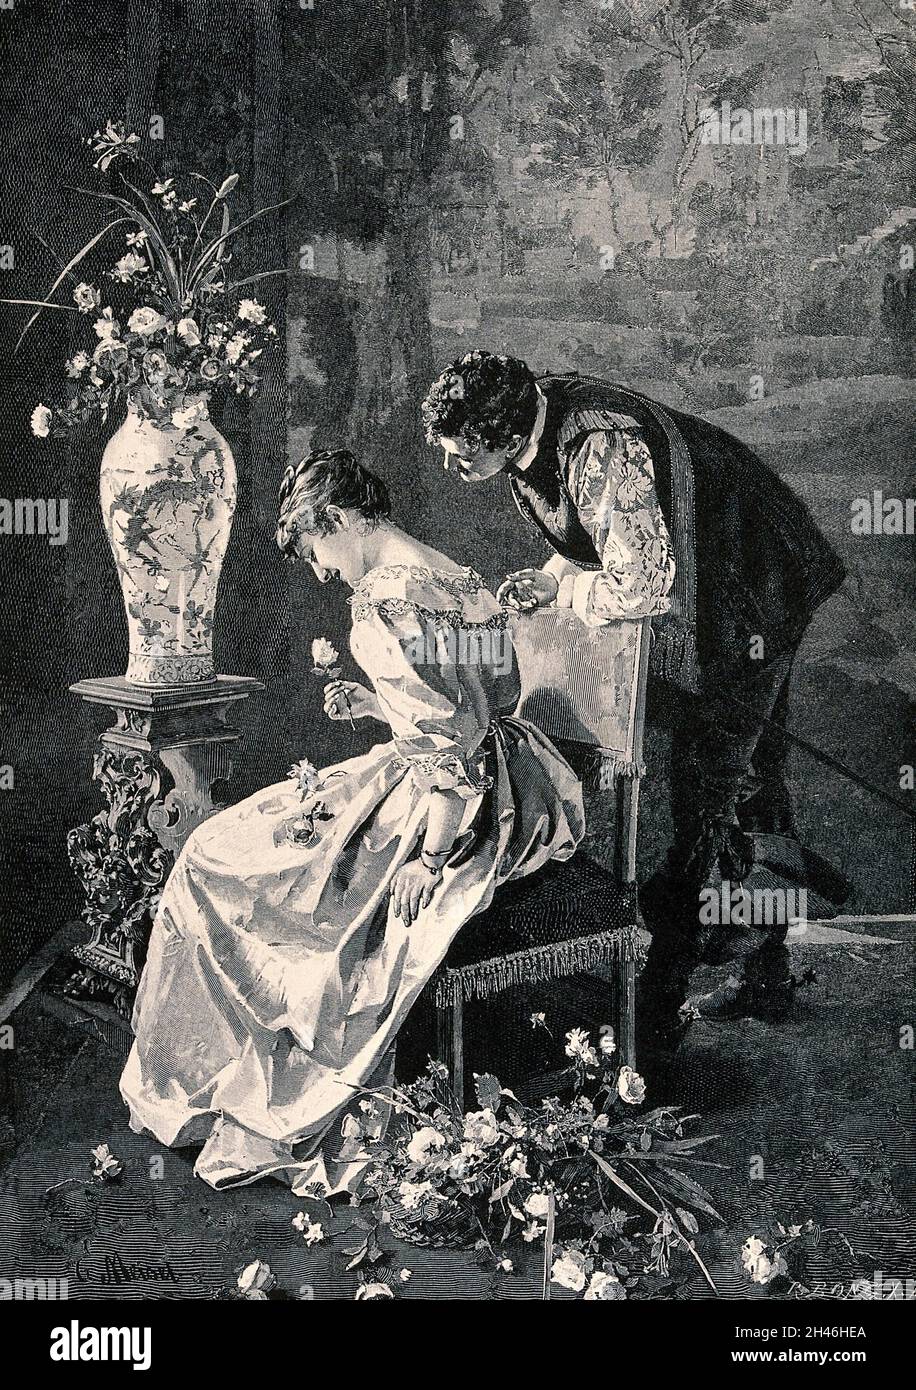 Un jeune homme se penche sur l'arrière de la chaise de la jeune femme et elle sourit alors qu'elle tient la fleur dans sa main.Gravure de bois par R. Bong X.A. après E. Meisel. Banque D'Images